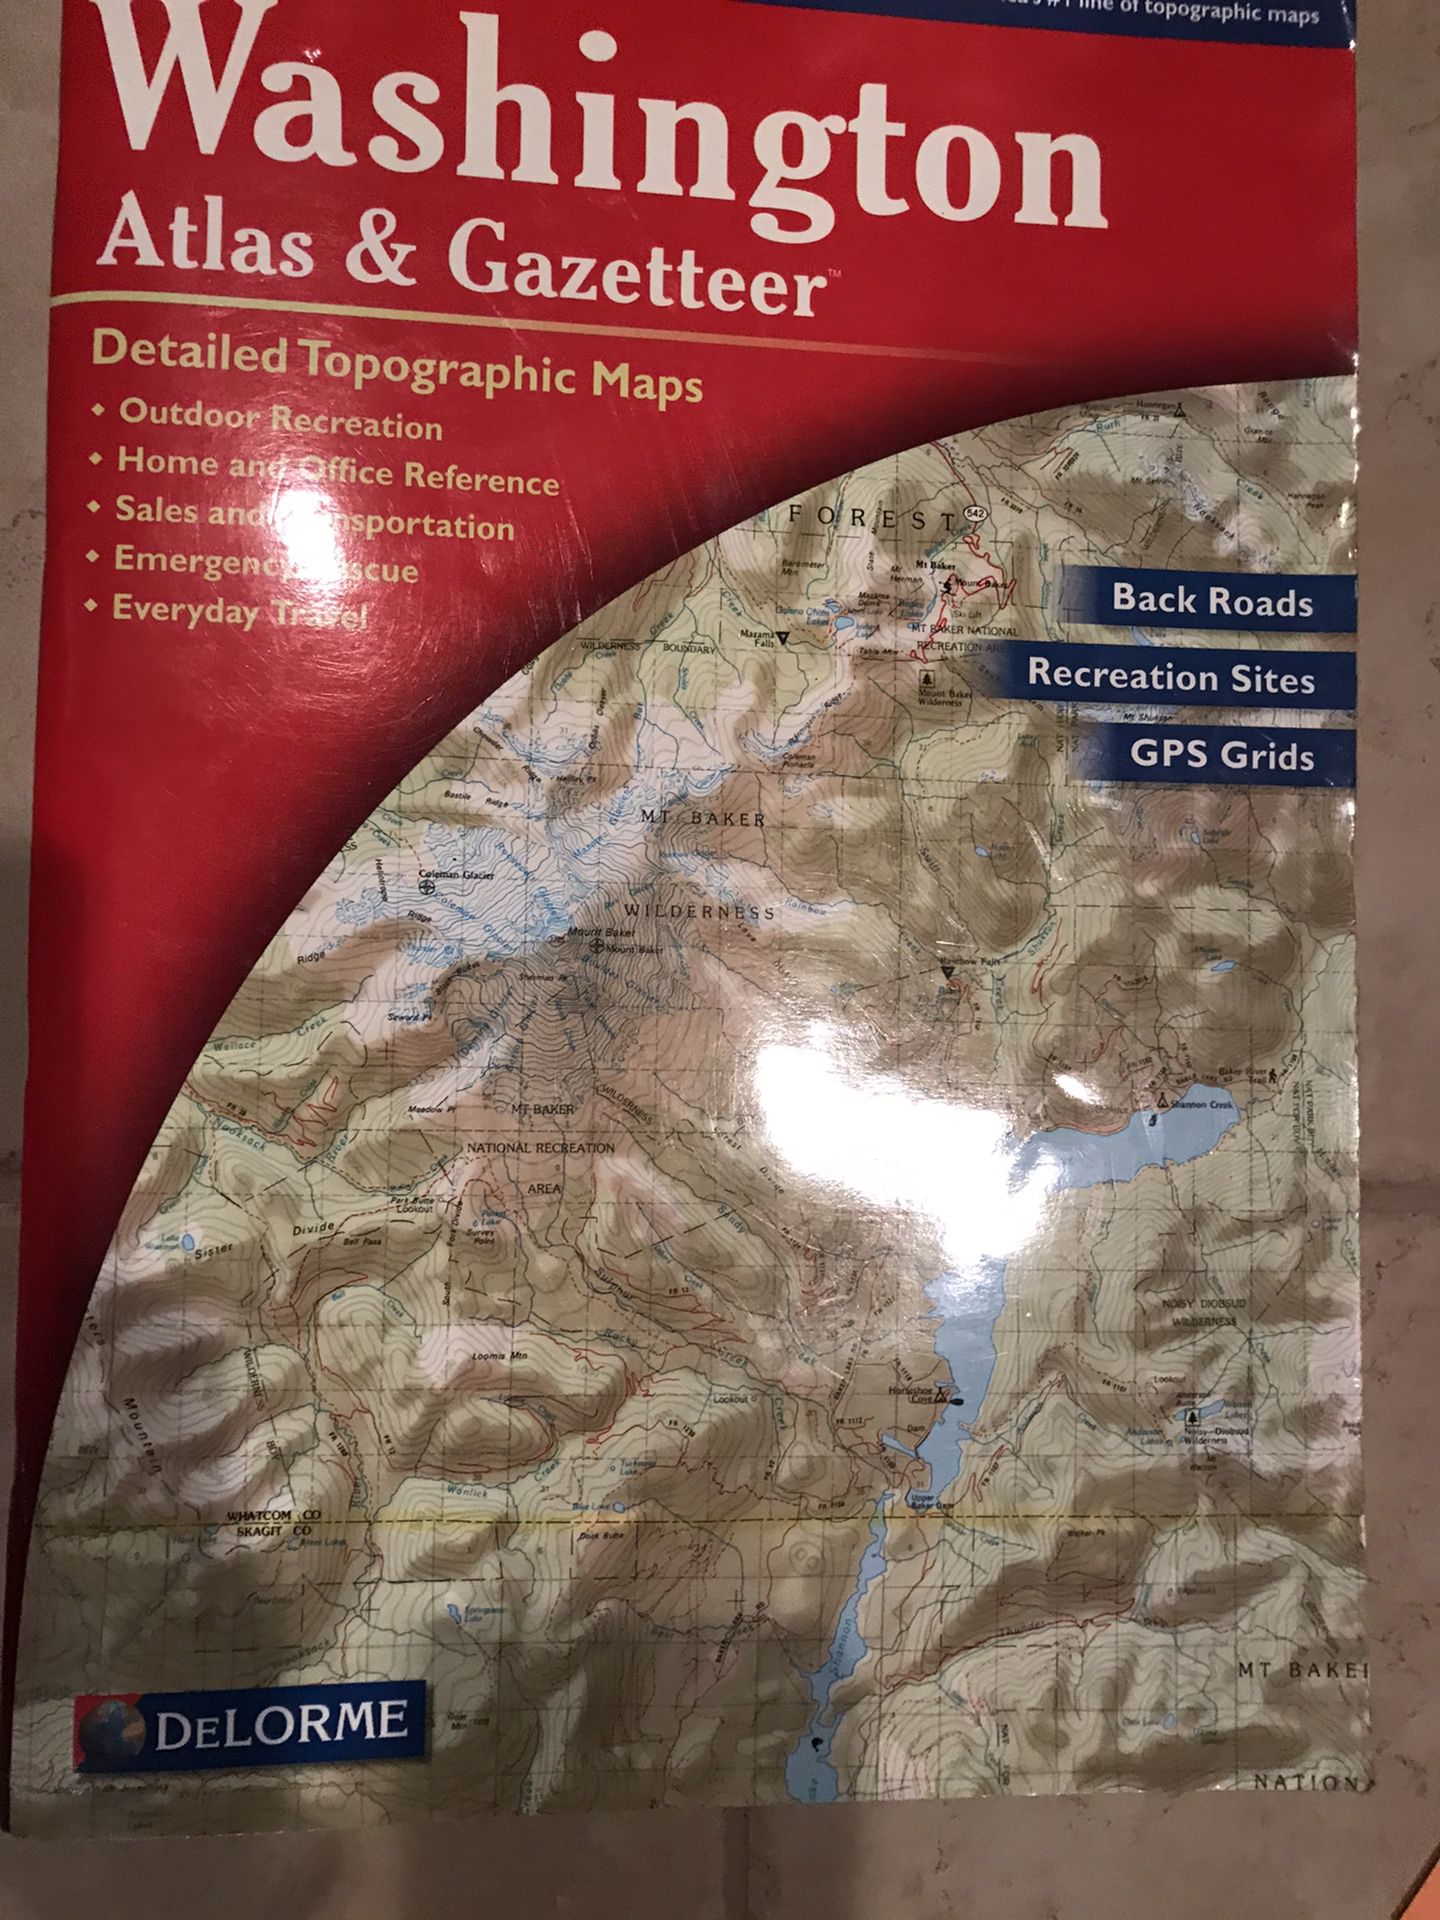 Washington Atlas & Gazetteer Map